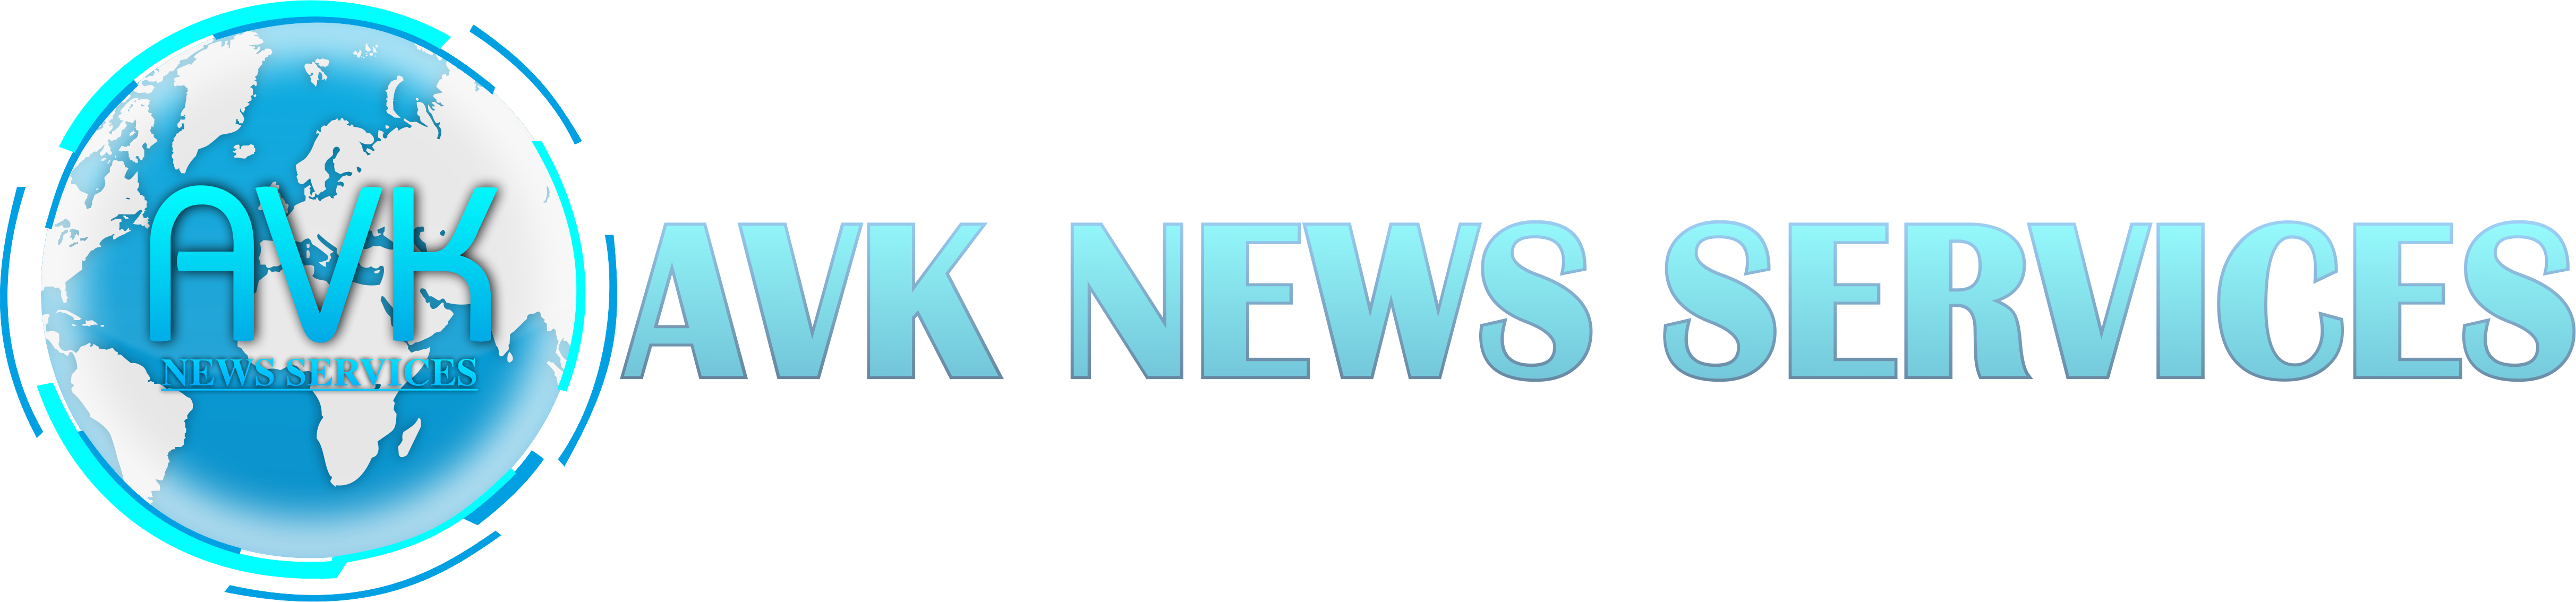 AVK NEWS SERVICES